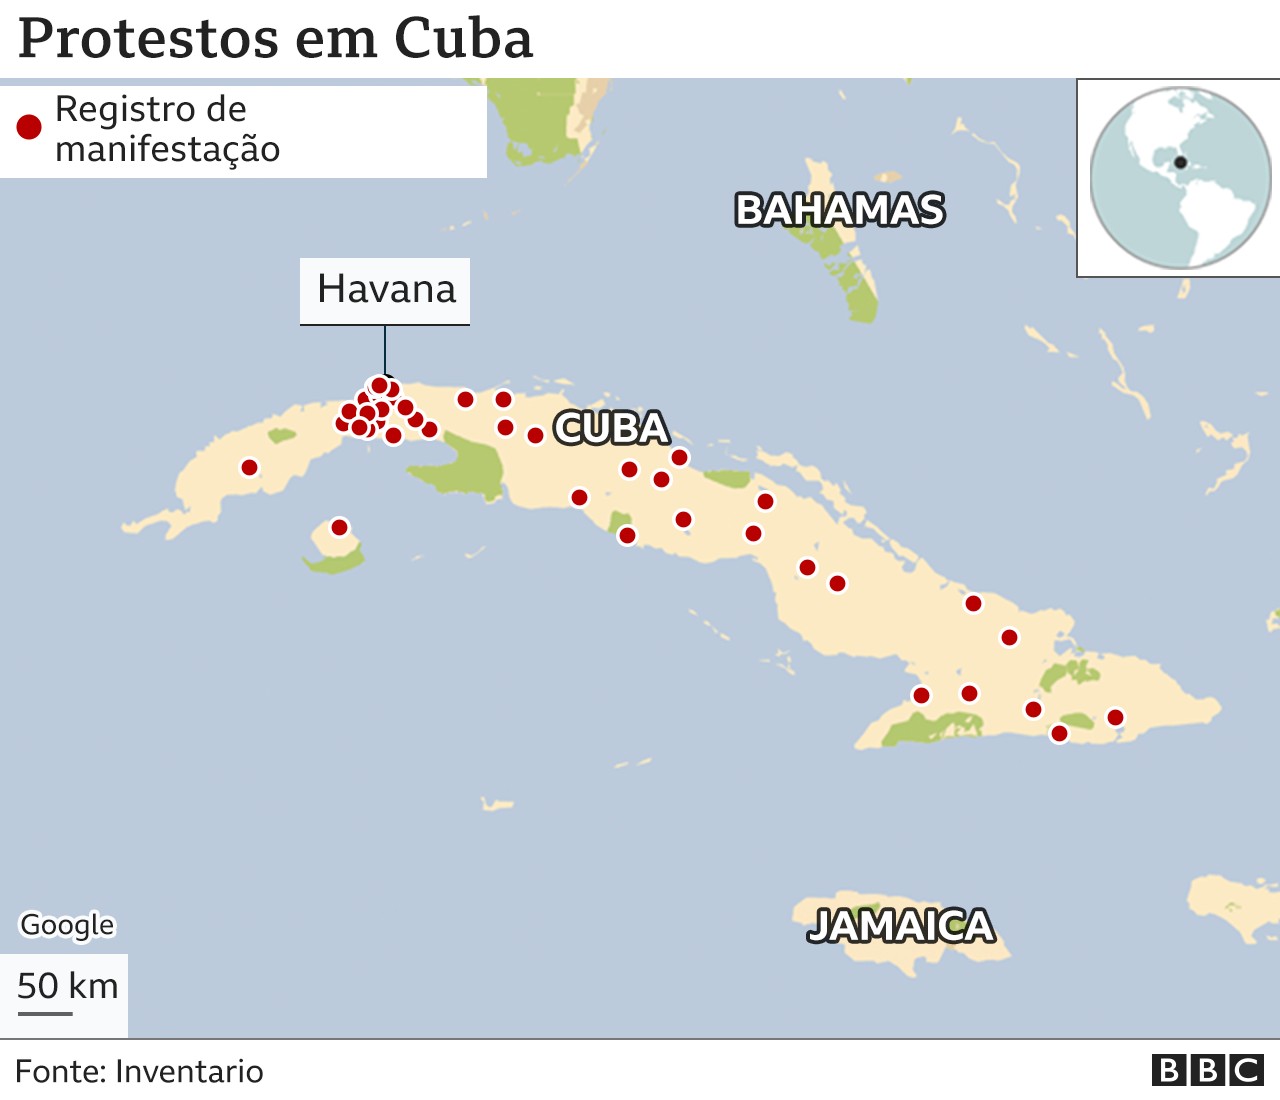 BBC - Protestos em Cuba (Foto: BBC News)